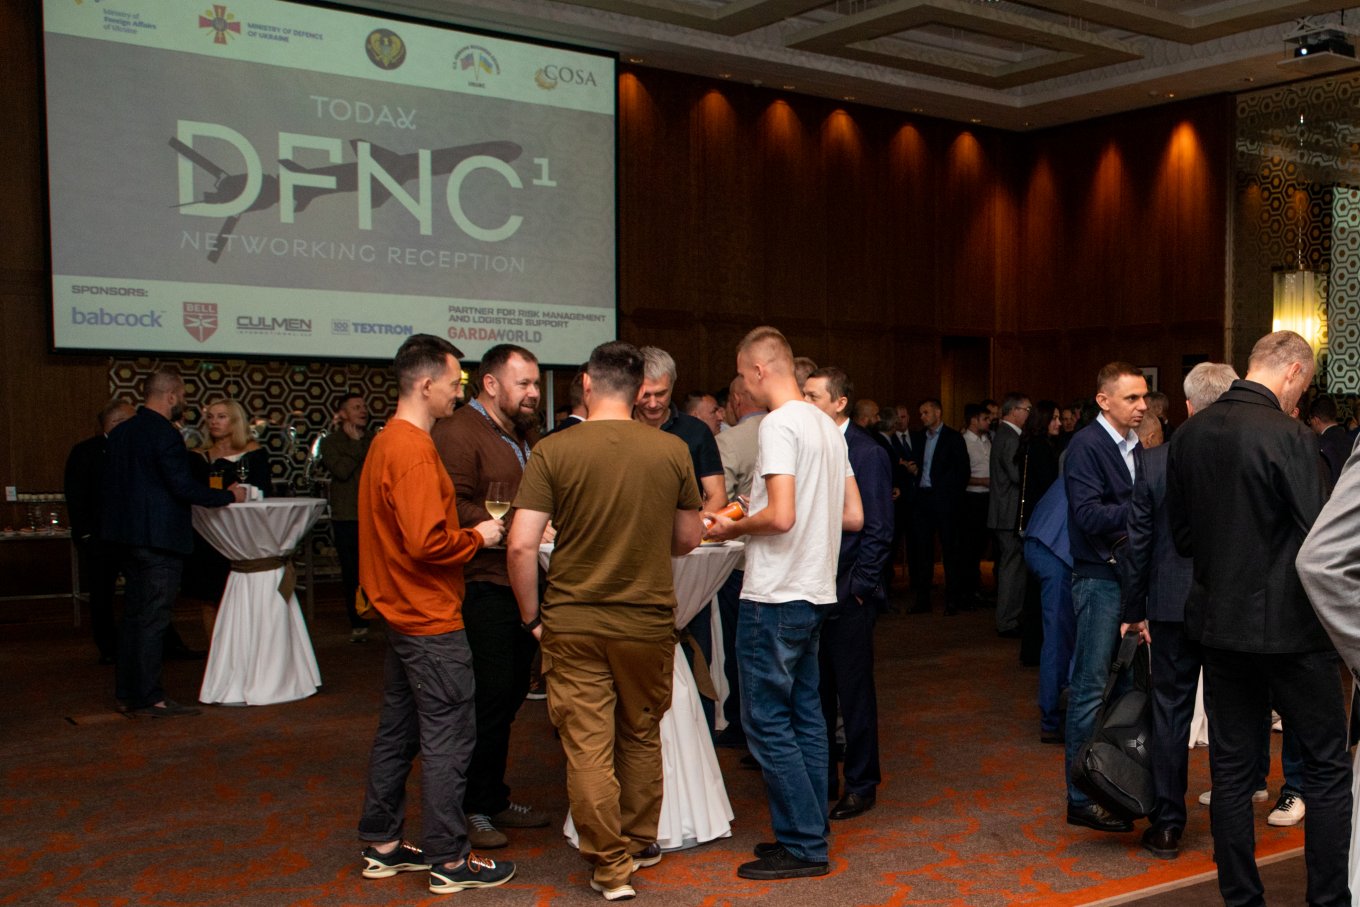 Перший Міжнародний Форум Оборонних Індустрій, DFNC1 Networking Reception, USUBC, СOSA, Defense Express